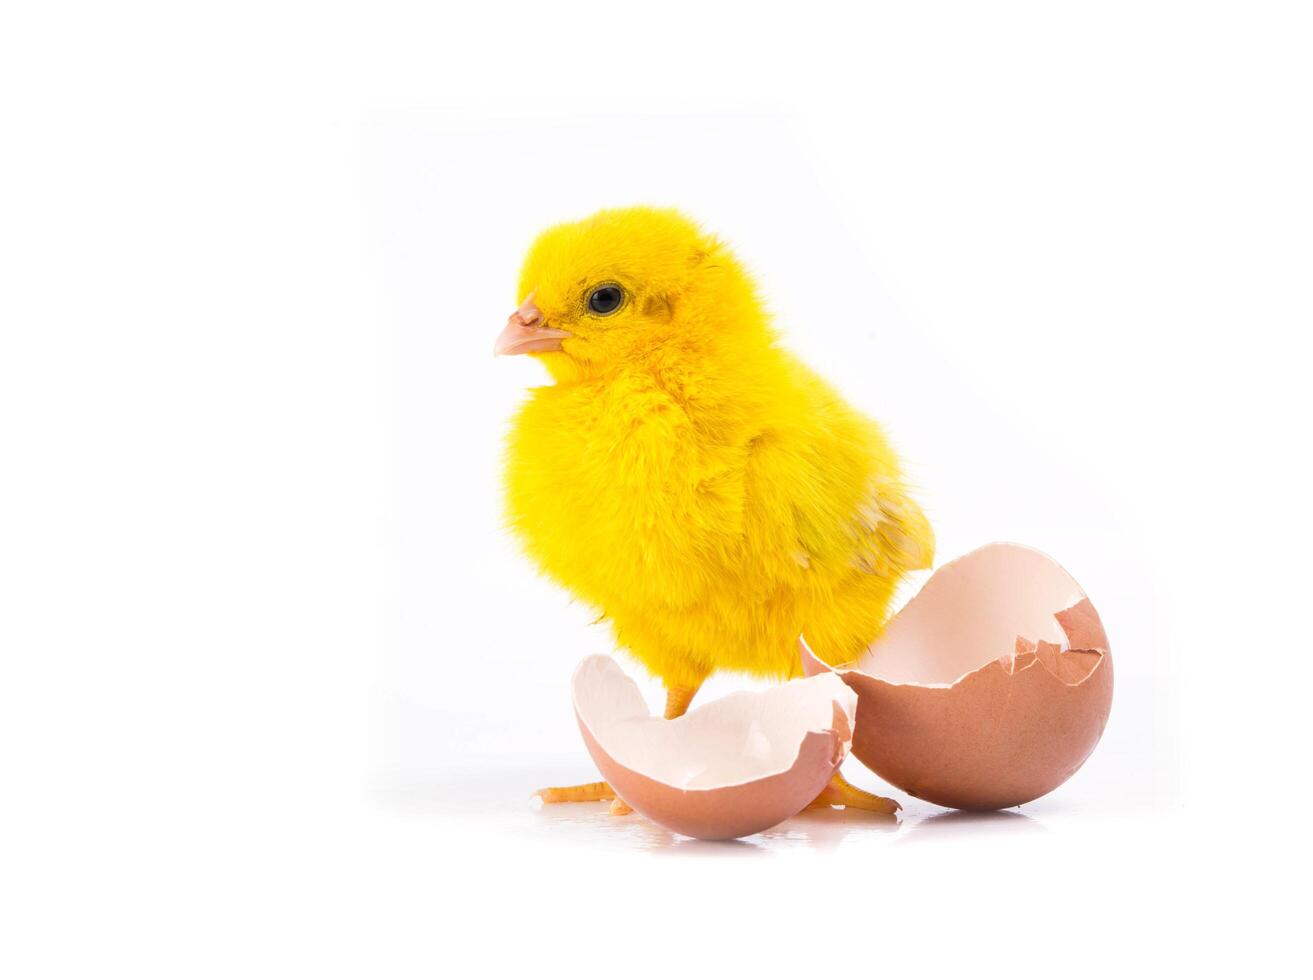 süßes gelbes kleines huhn mit gebrochenem ei, hühnerkonzept foto